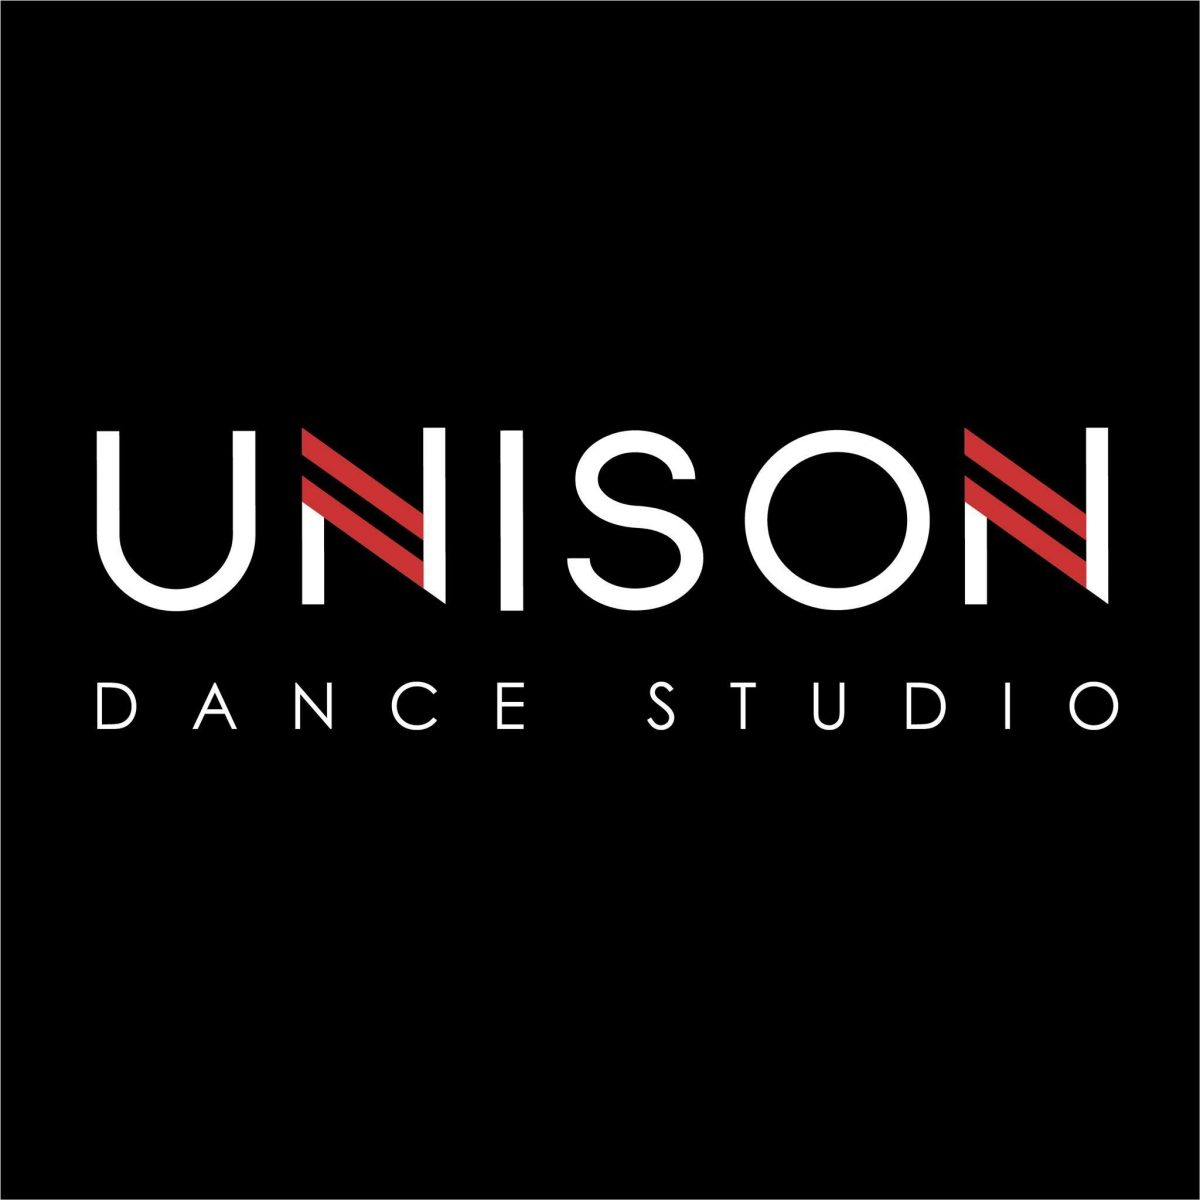 Unison Dance Studio – CS2, Tầng 3 số 55 ngõ 135 Đội Cấn, Ba Đình, Hà Nội